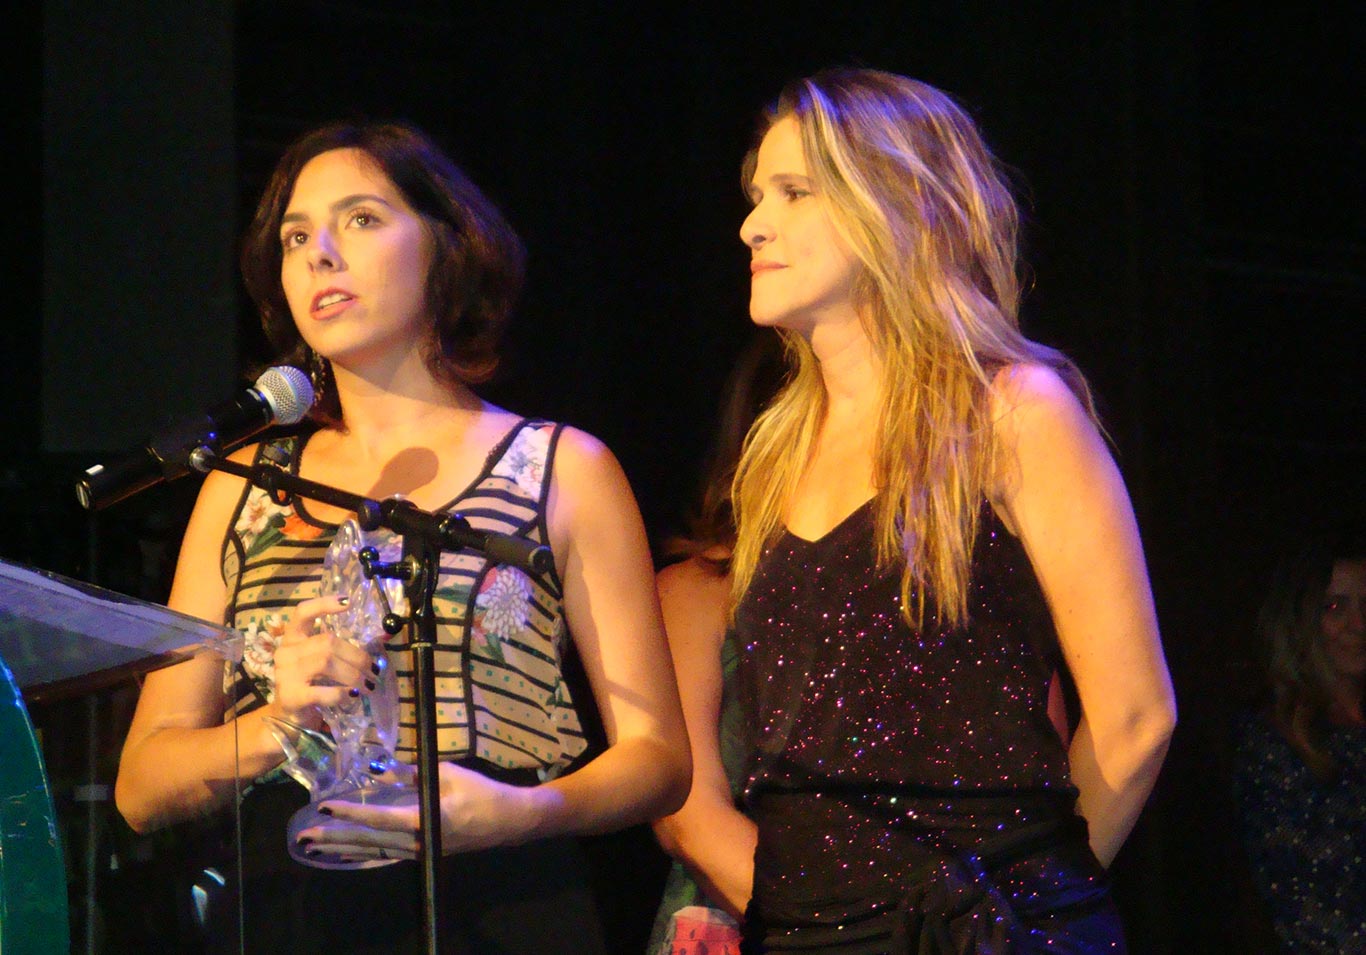 Ingrid Guimarães e a diretora Júlia Rezende recebendo a Lente de Cristal